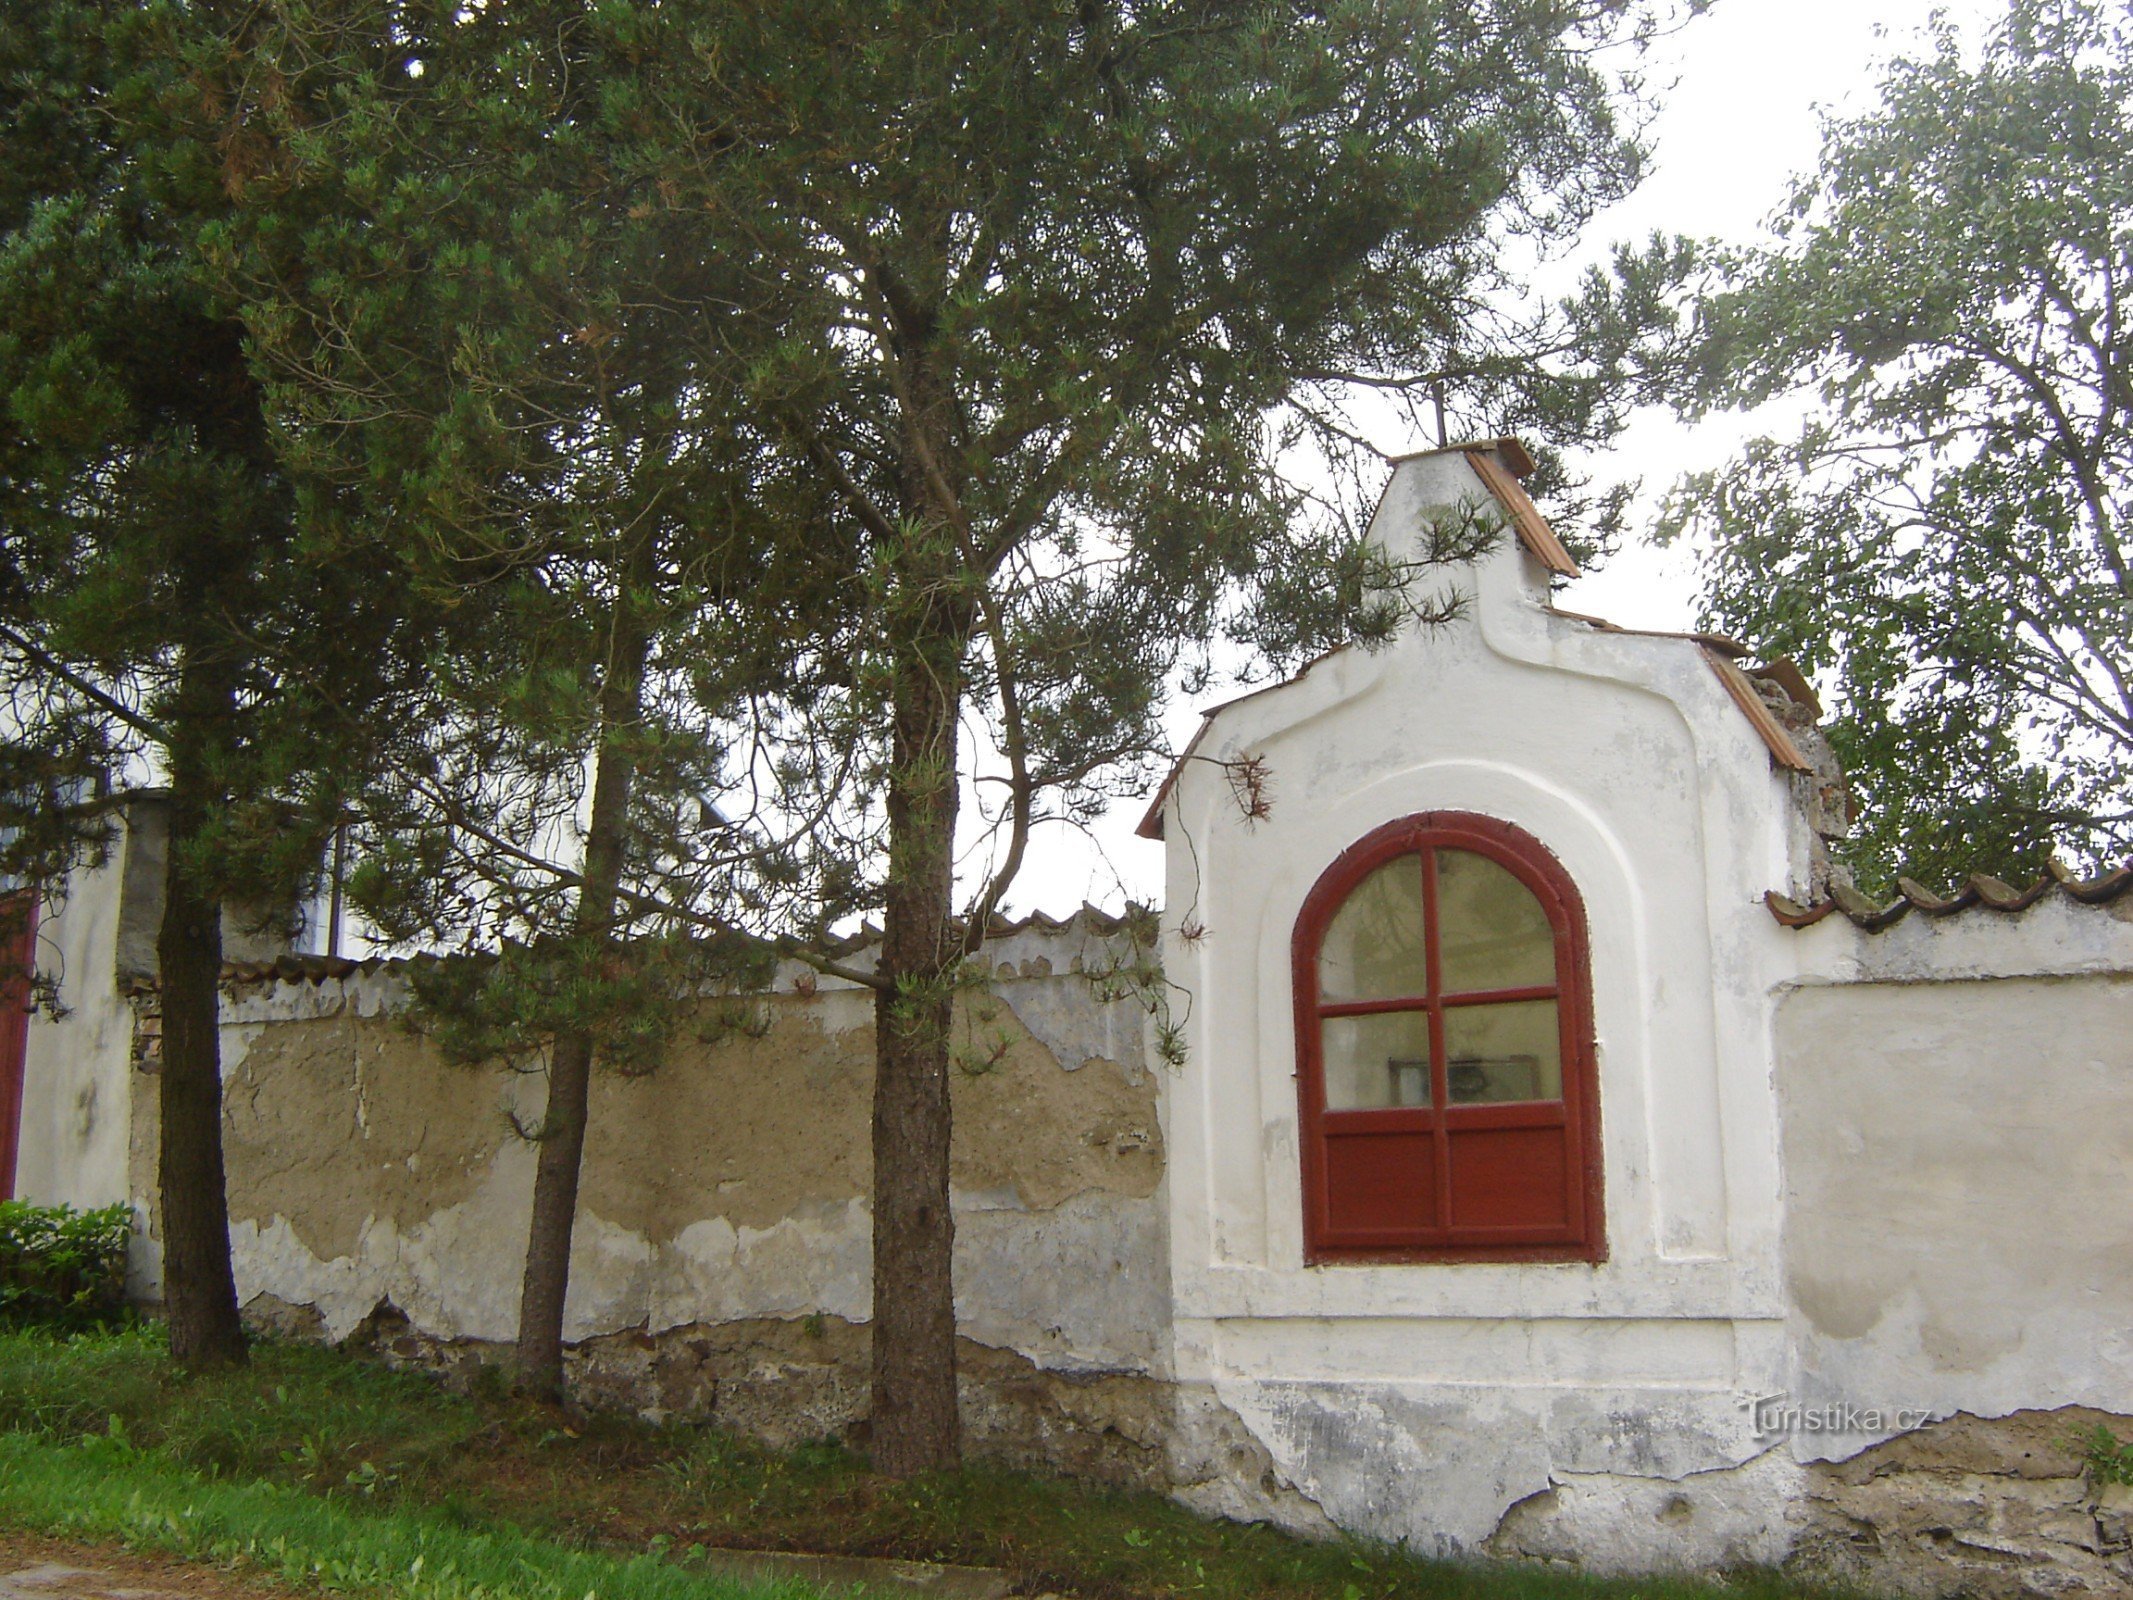 capilla de ladrillo en el n. 12 Haškovcova Lhota